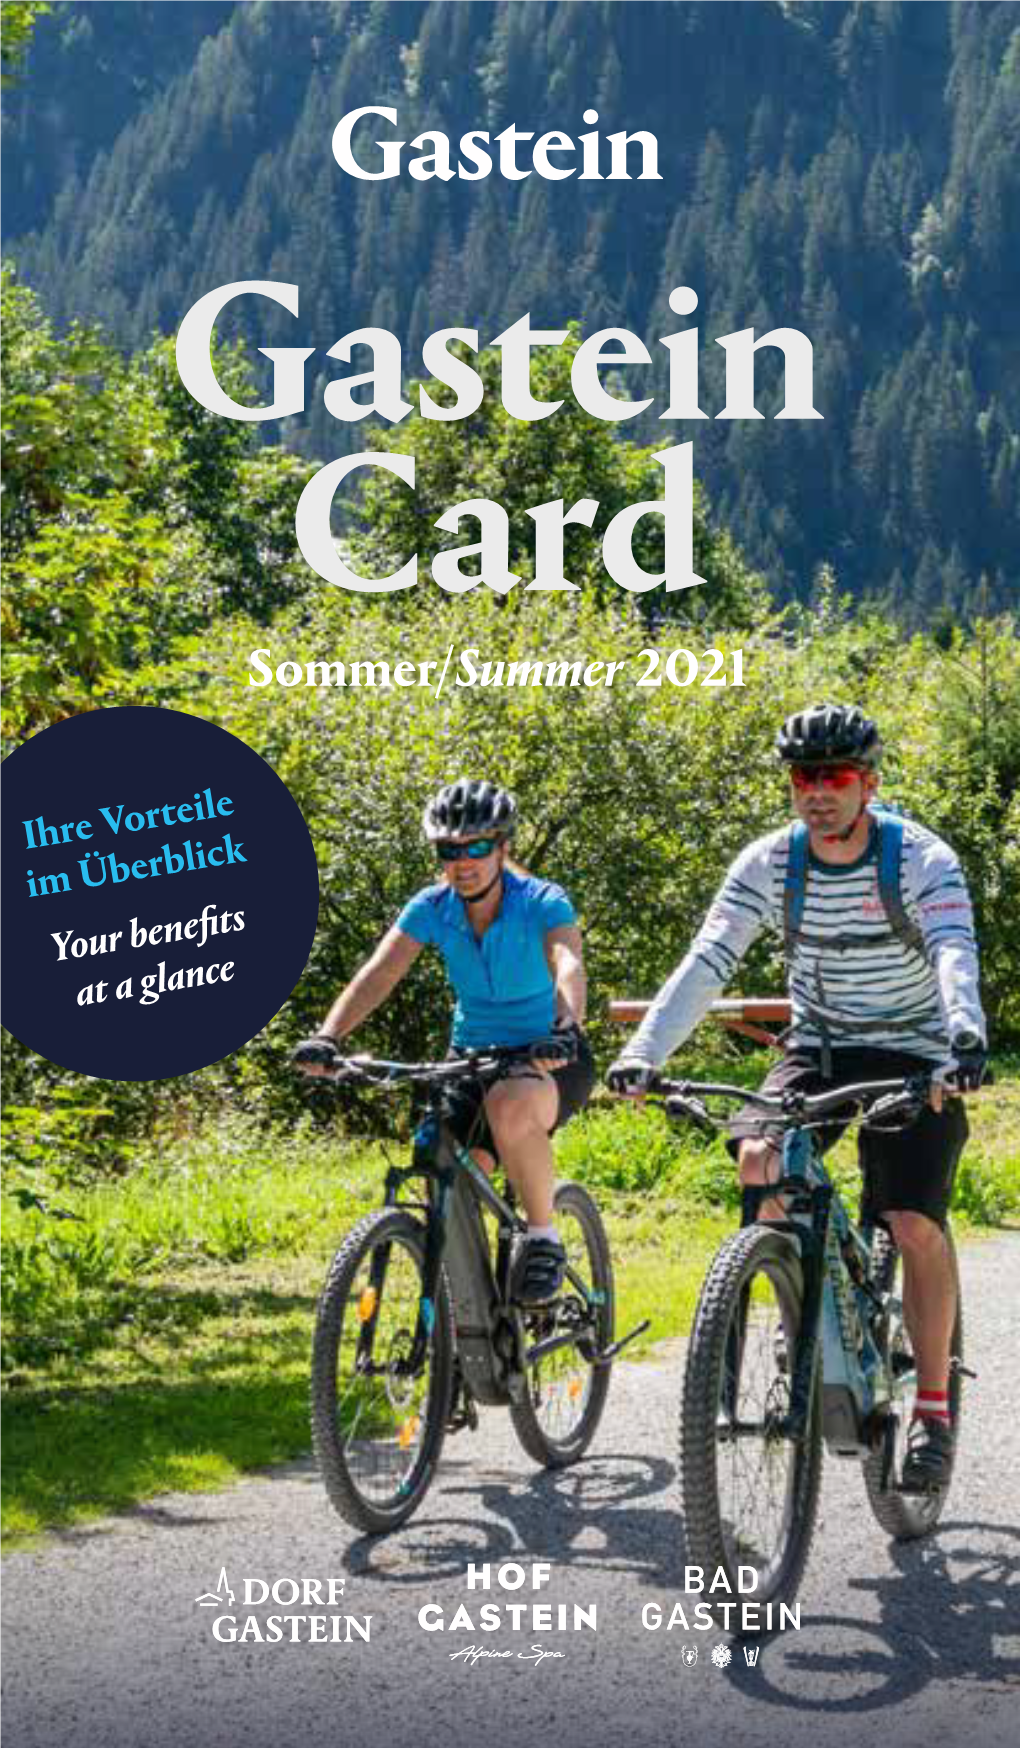 Gastein Card Sommer/Summer 2021